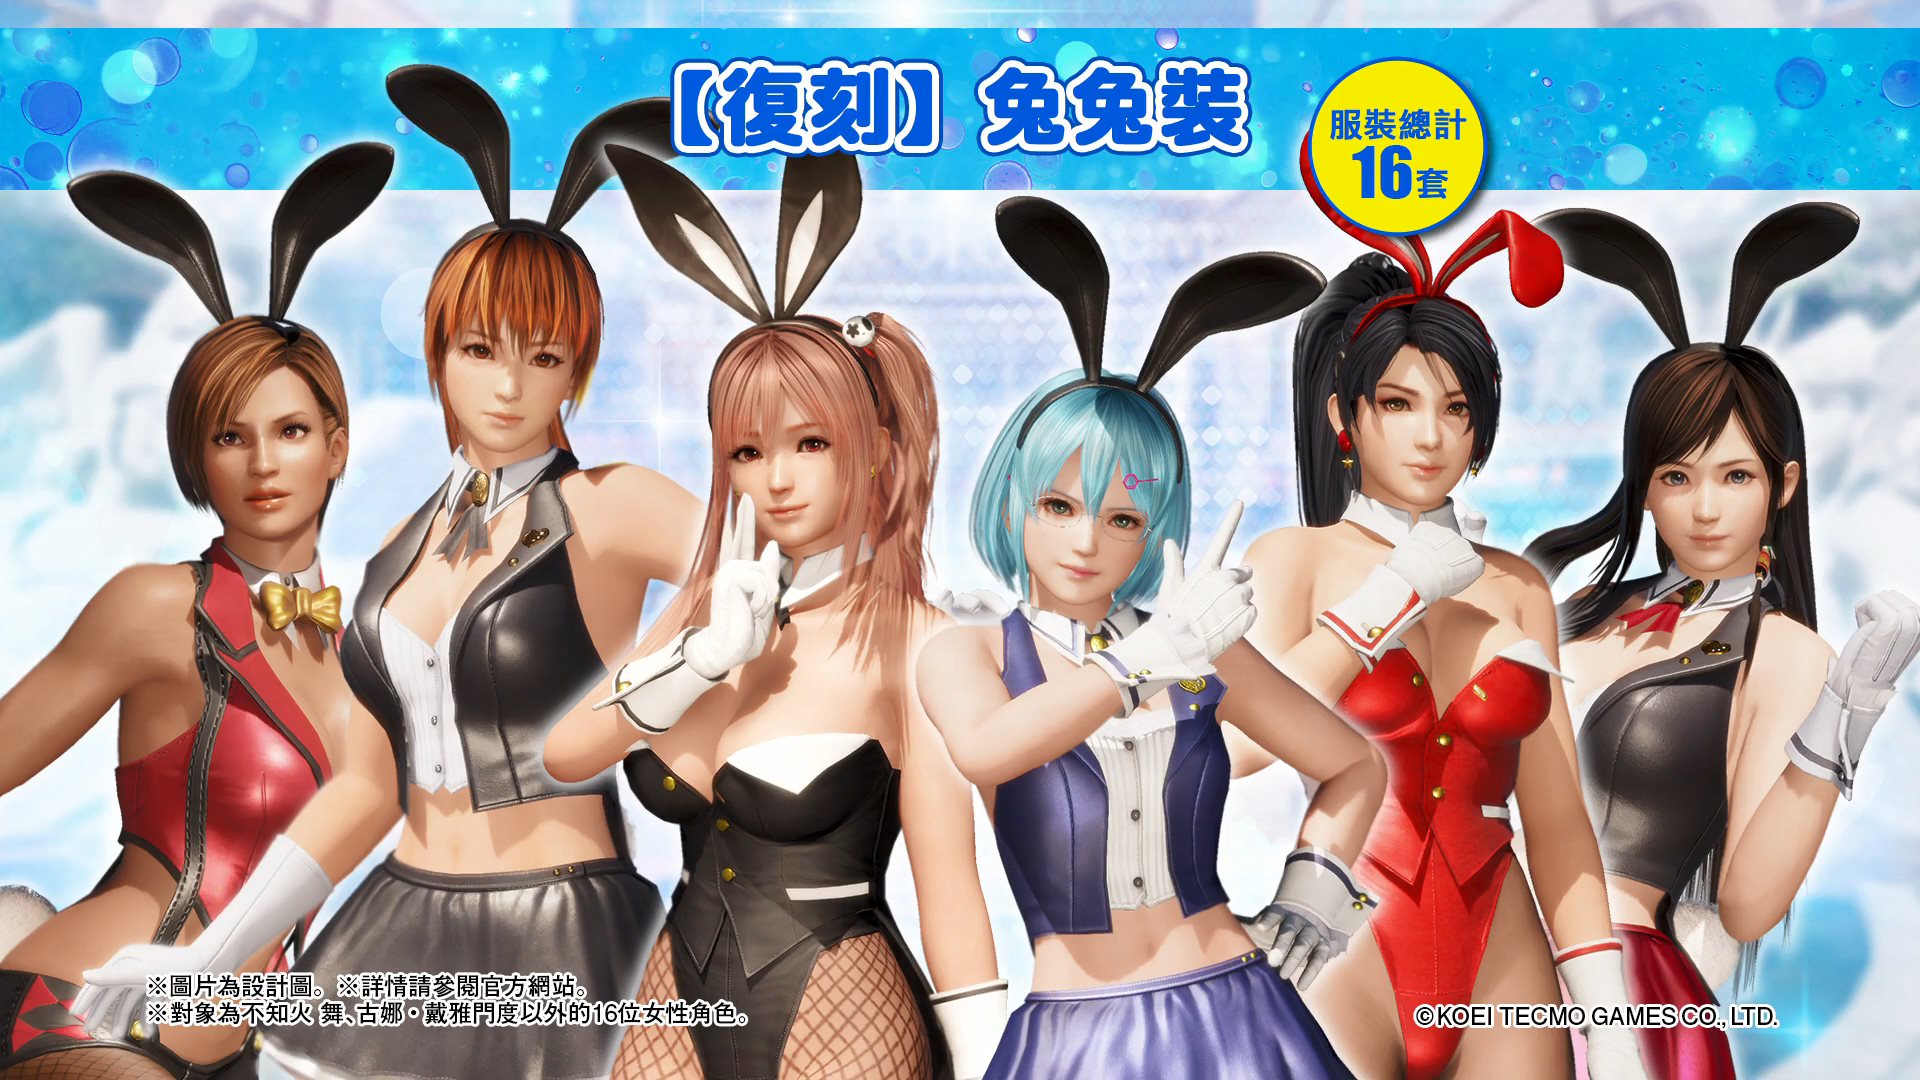 兔女郎激烈战斗 《死或生6》DLC兔兔裝宣传片公开